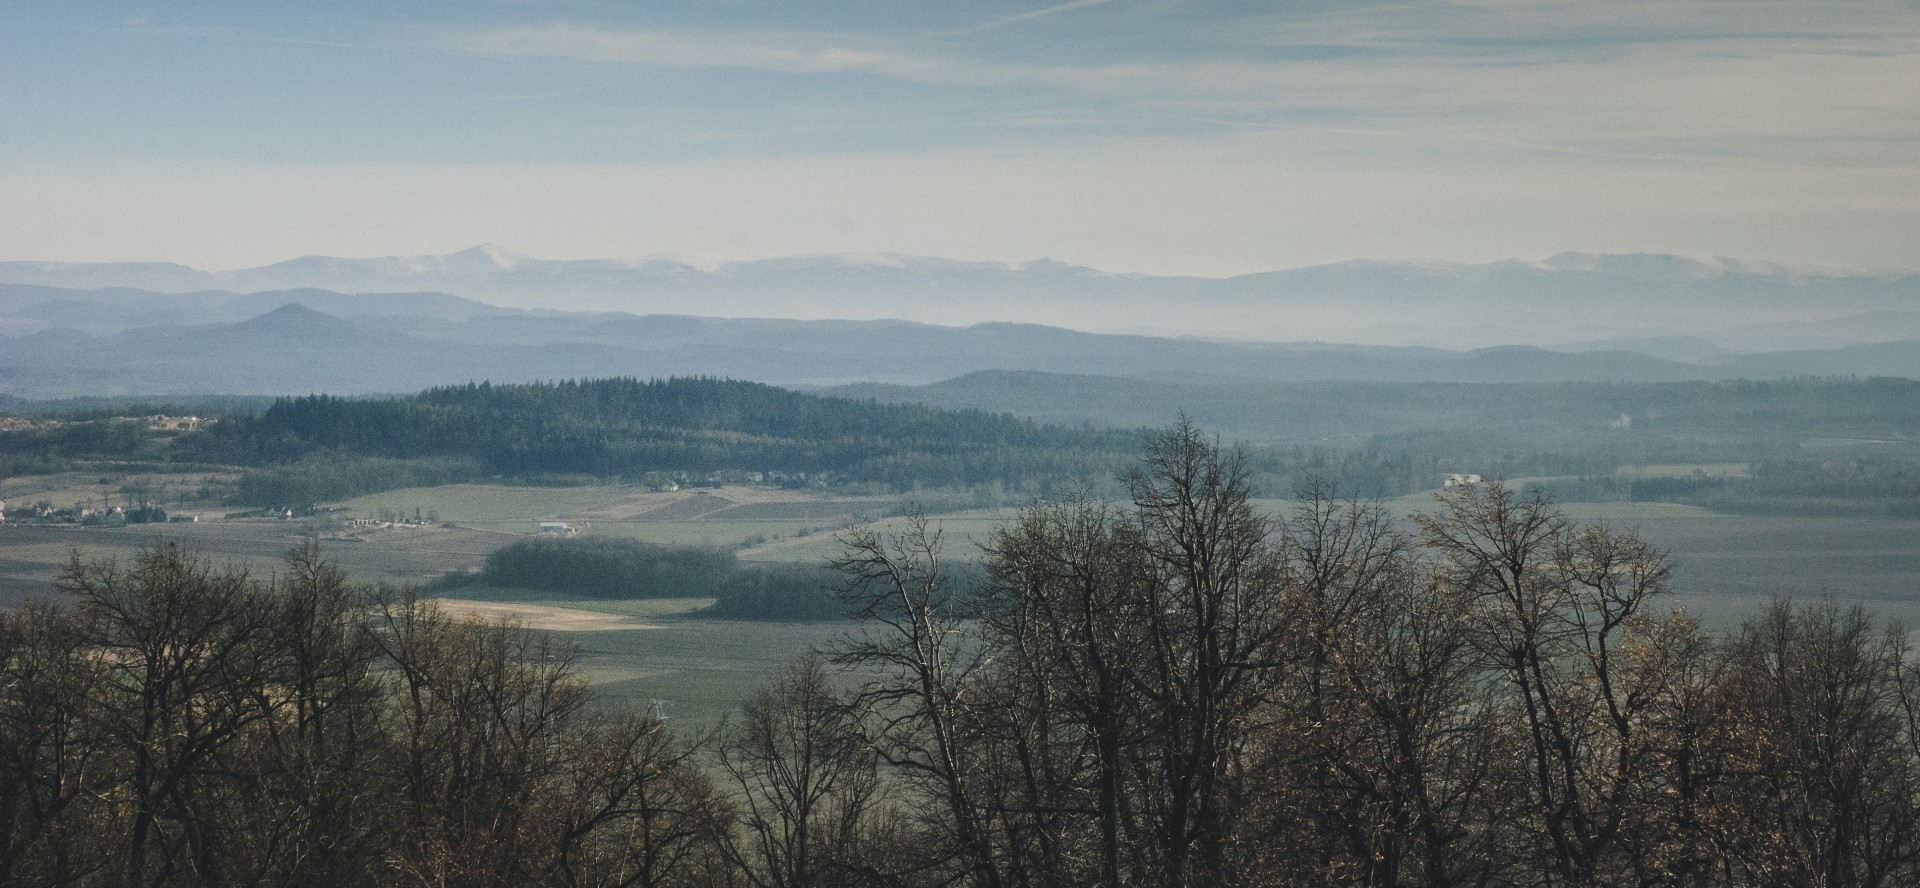 fotograf zielona-gora zuczek-film portfolio zdjecia krajobrazu gory mazury